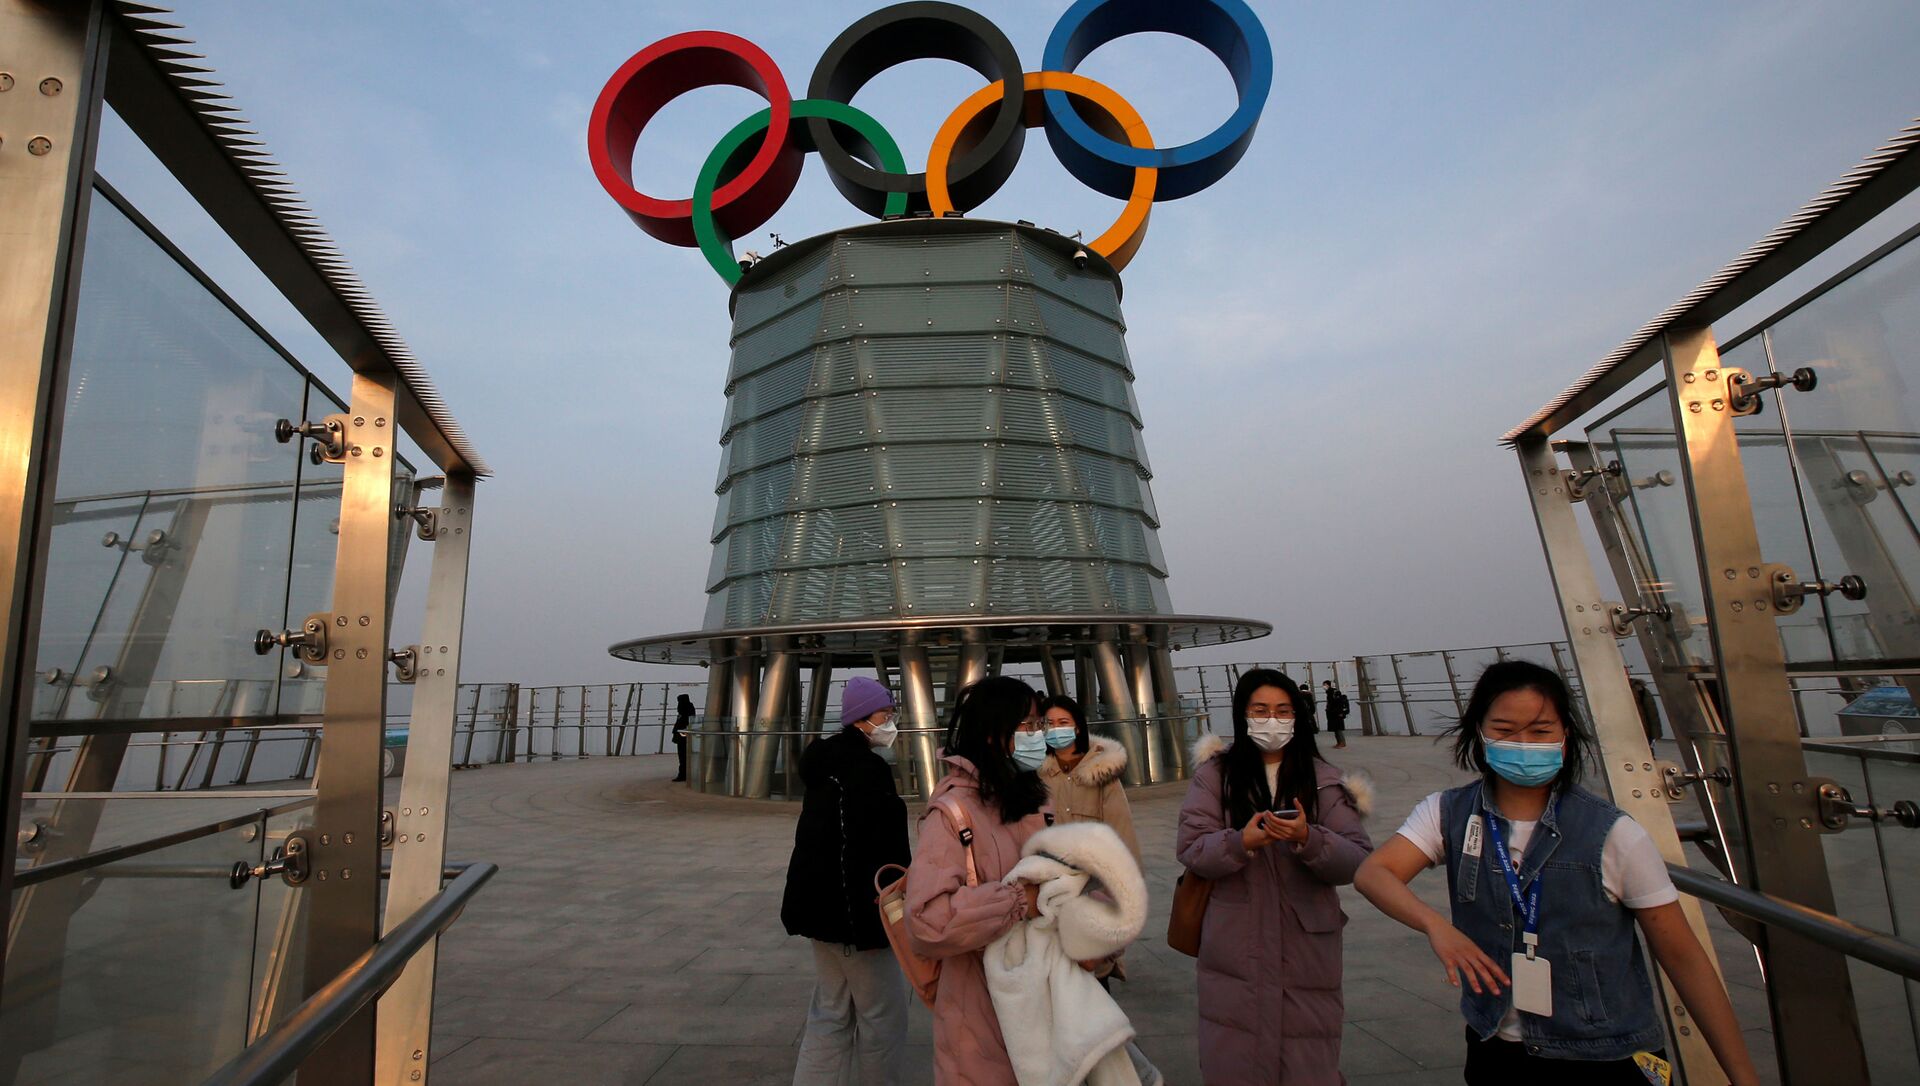 Vòng Olympic trên tháp Olympic ở Bắc Kinh. - Sputnik Việt Nam, 1920, 04.02.2021